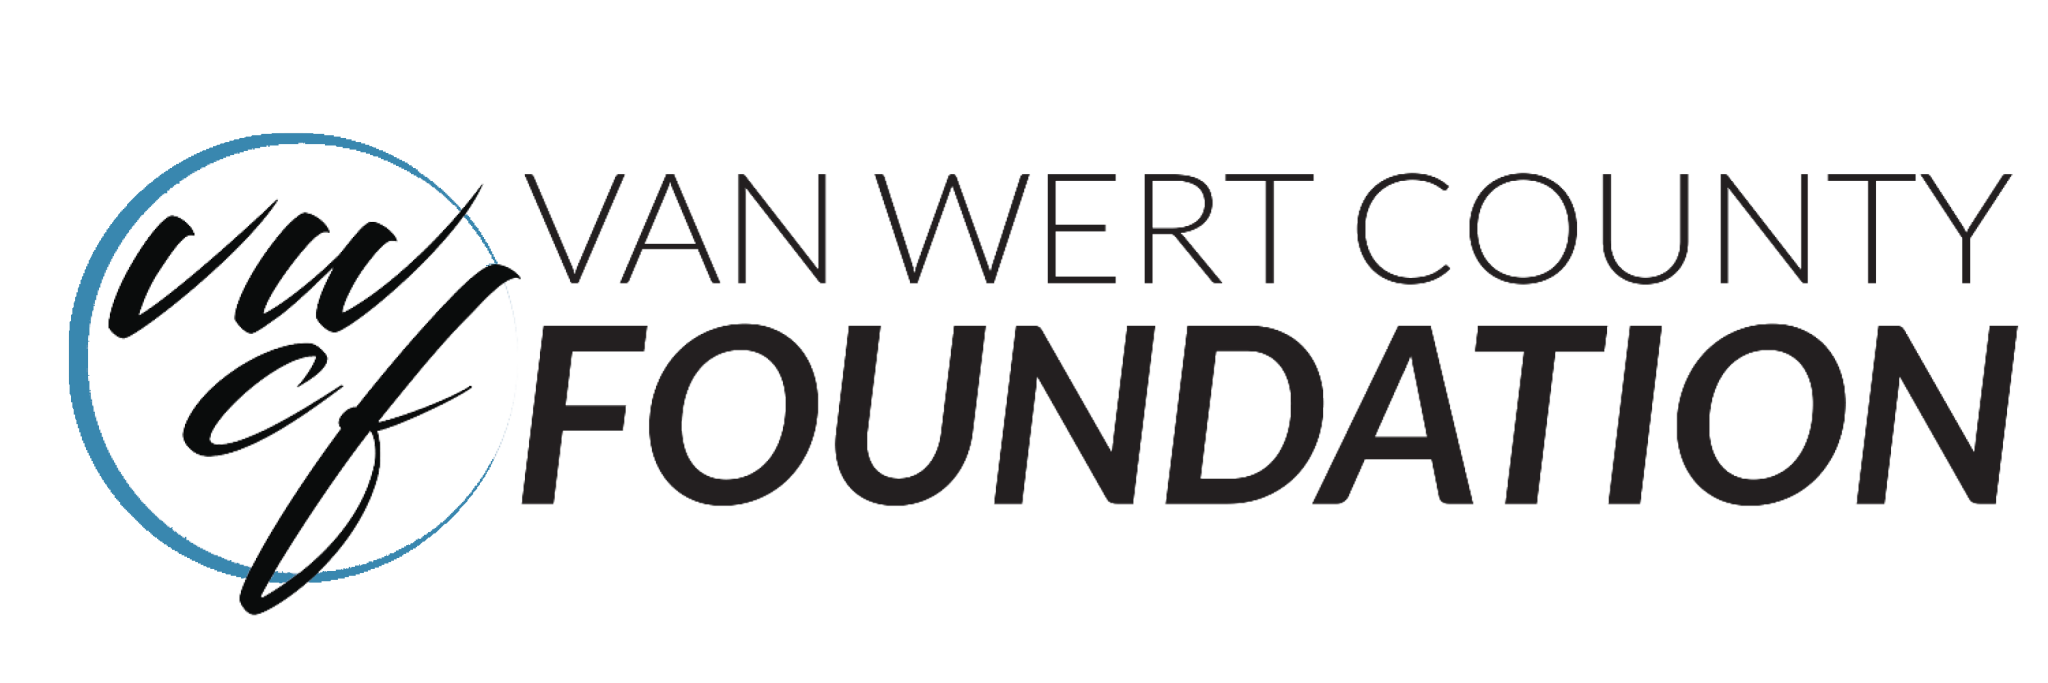 Van wert County Foundation